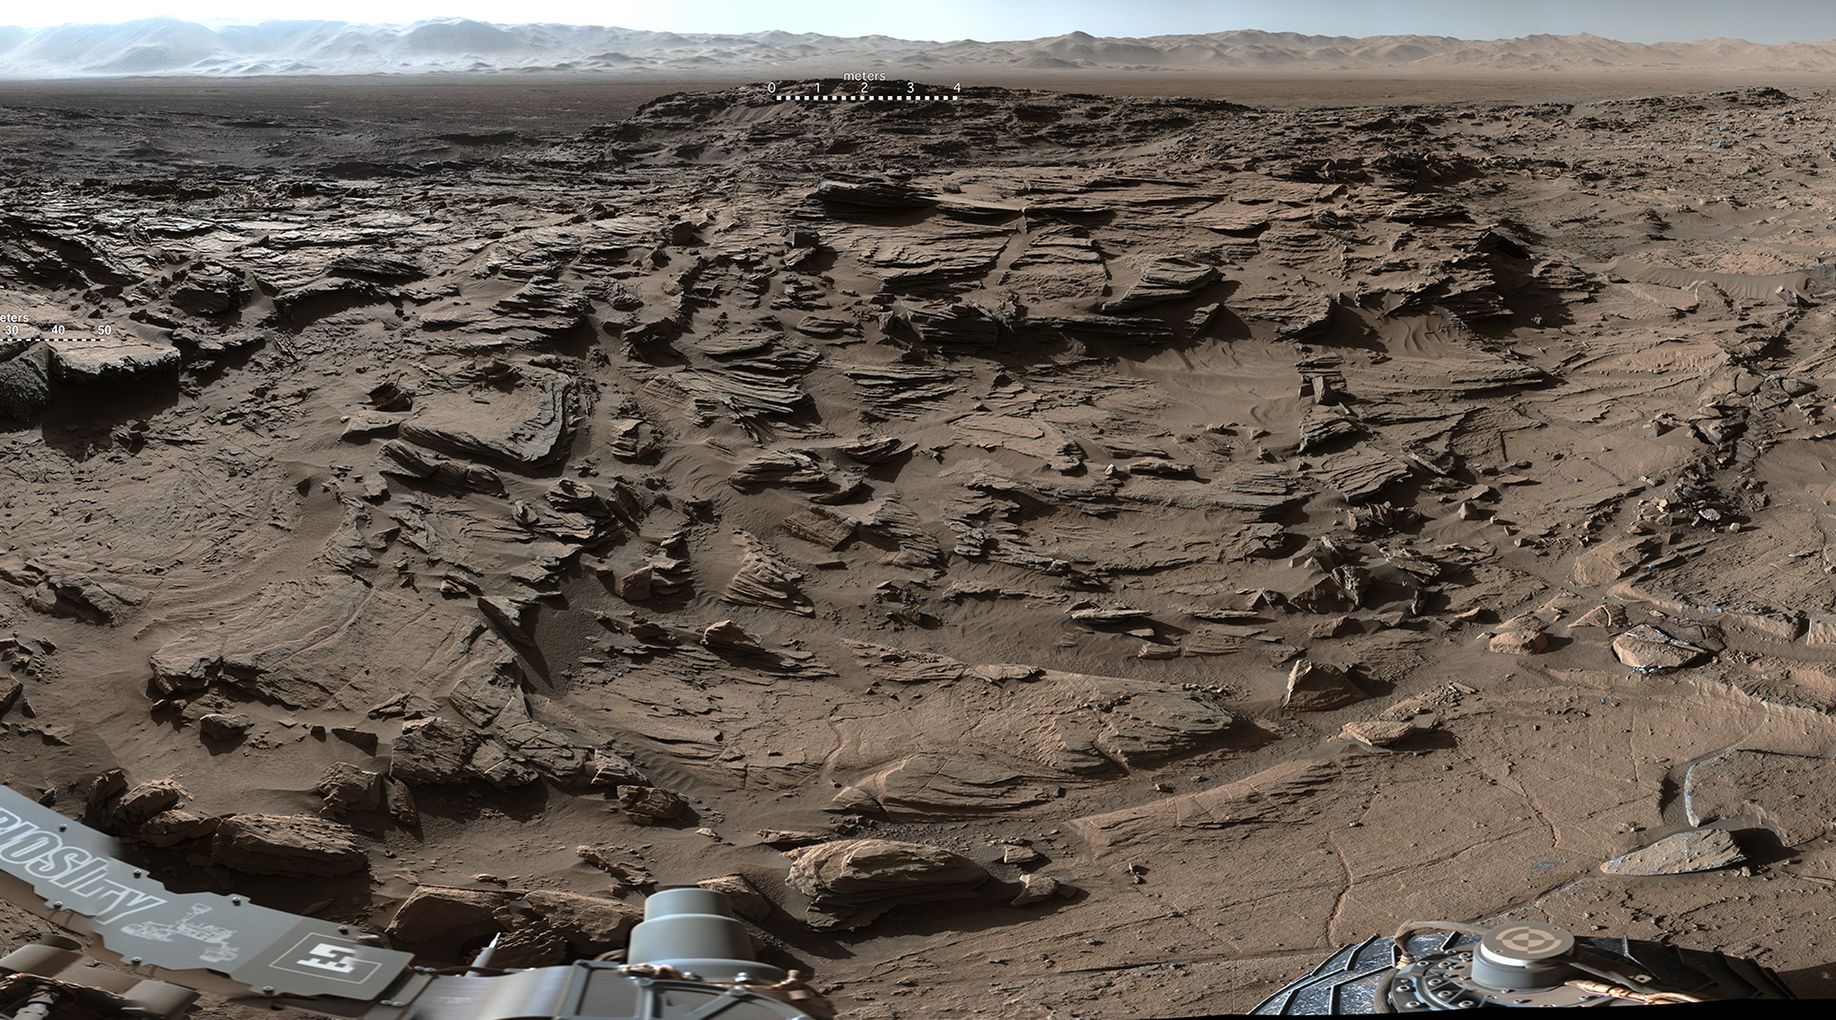 Niezwykły panoramiczny widok Marsa